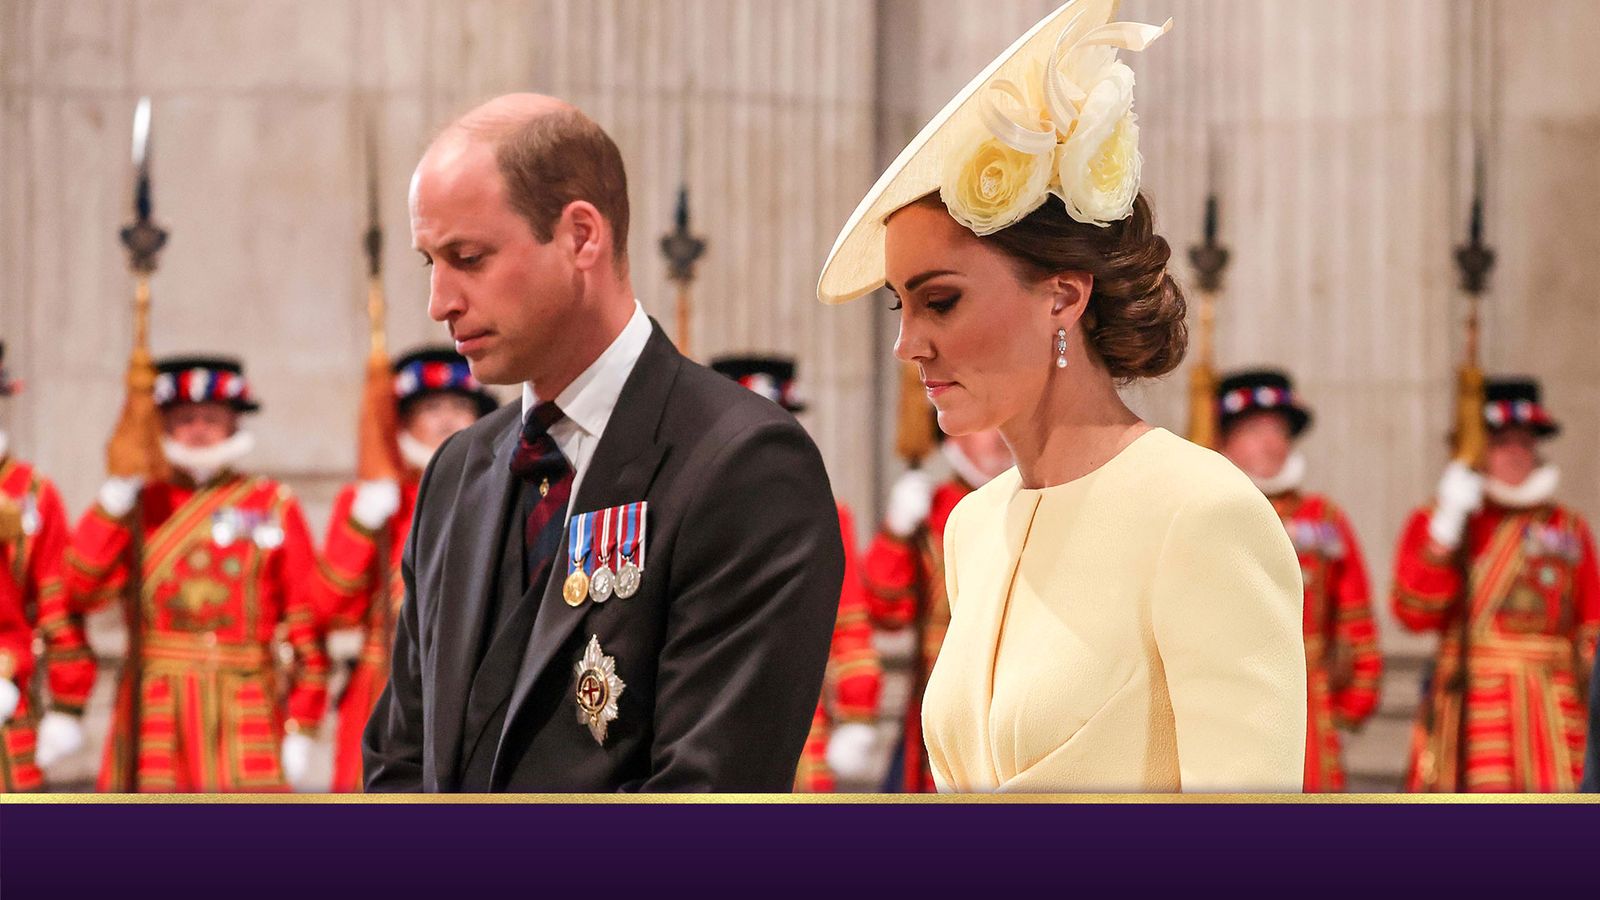 William được mệnh danh là Hoàng tử xứ Wales – Kate nối gót Diana trở thành Công nương xứ Wales |  Tin tức Vương quốc Anh